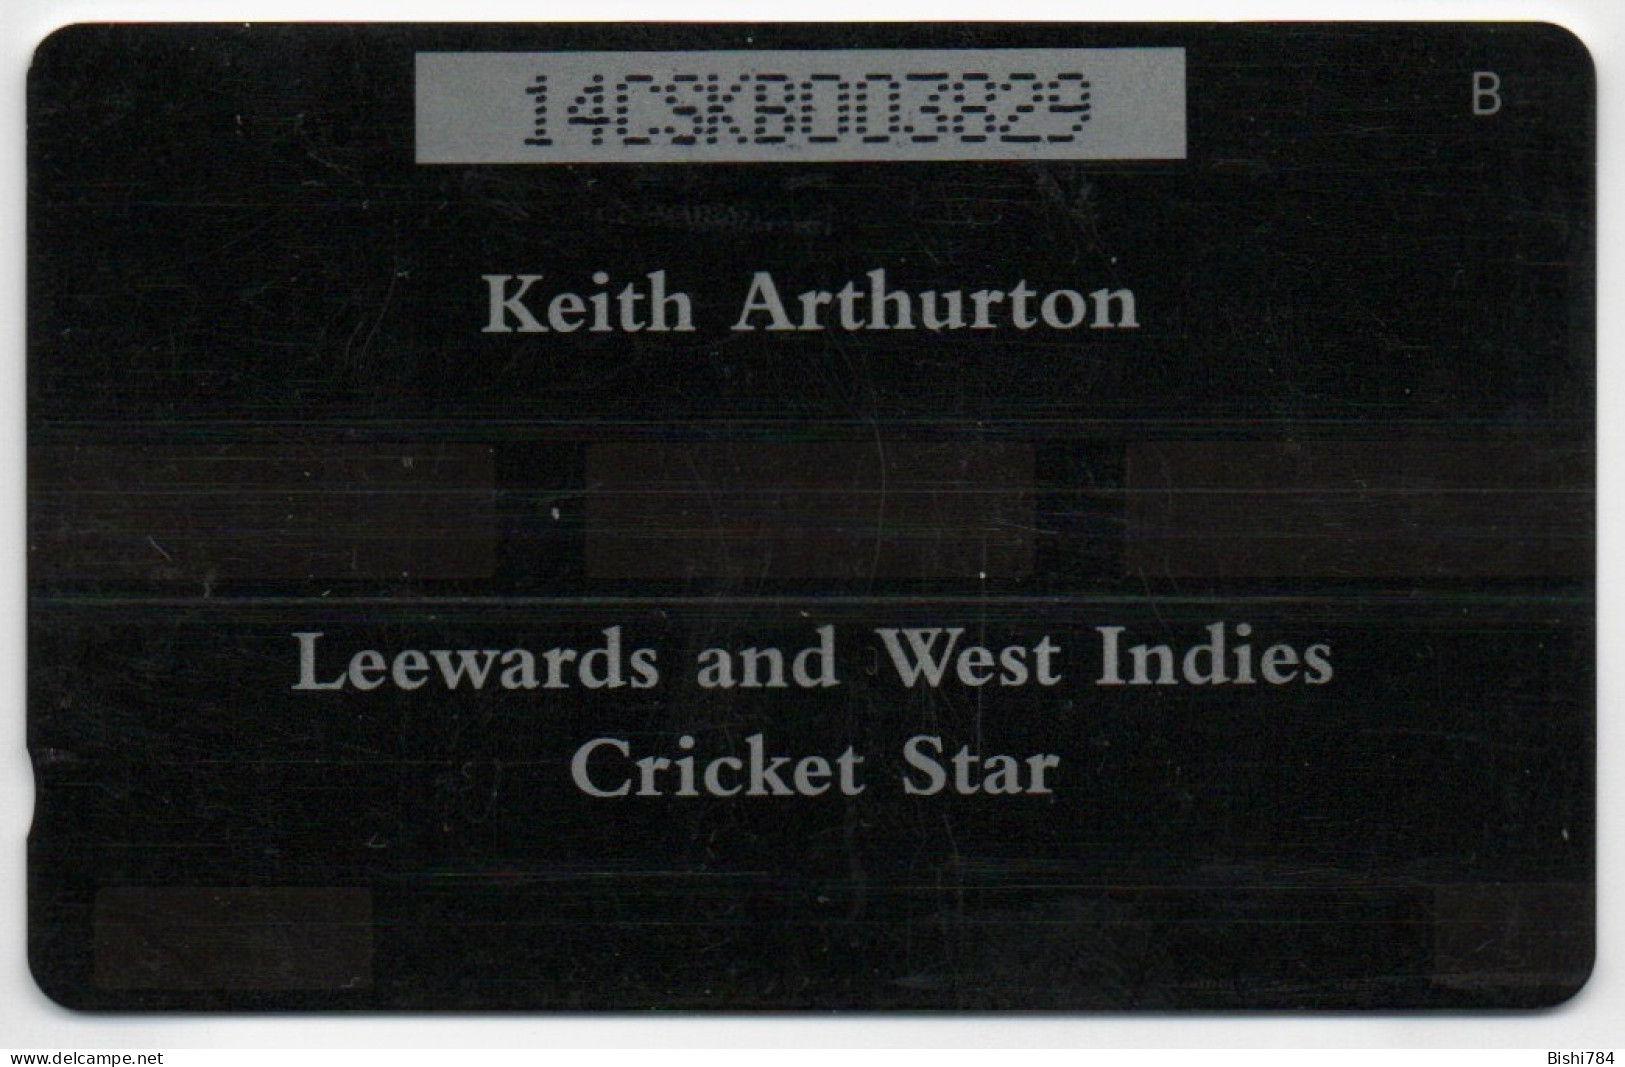 St. Kitts & Nevis - Keith Arthurton - 14CSKB - St. Kitts & Nevis